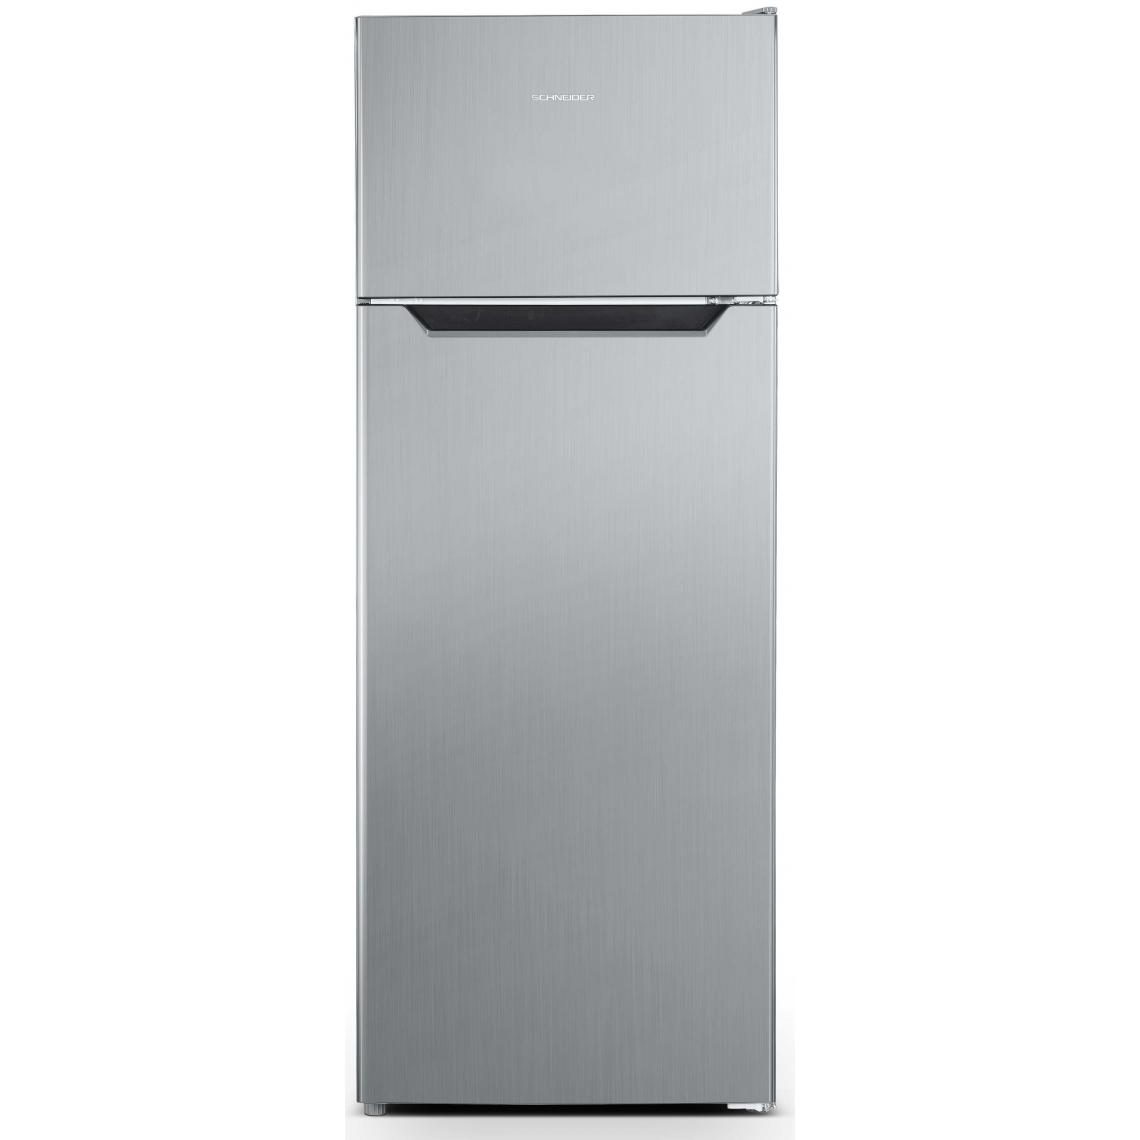 Schneider - Refrigerateur 2 portes SCHNEIDER GEM SCDD205X - Réfrigérateur